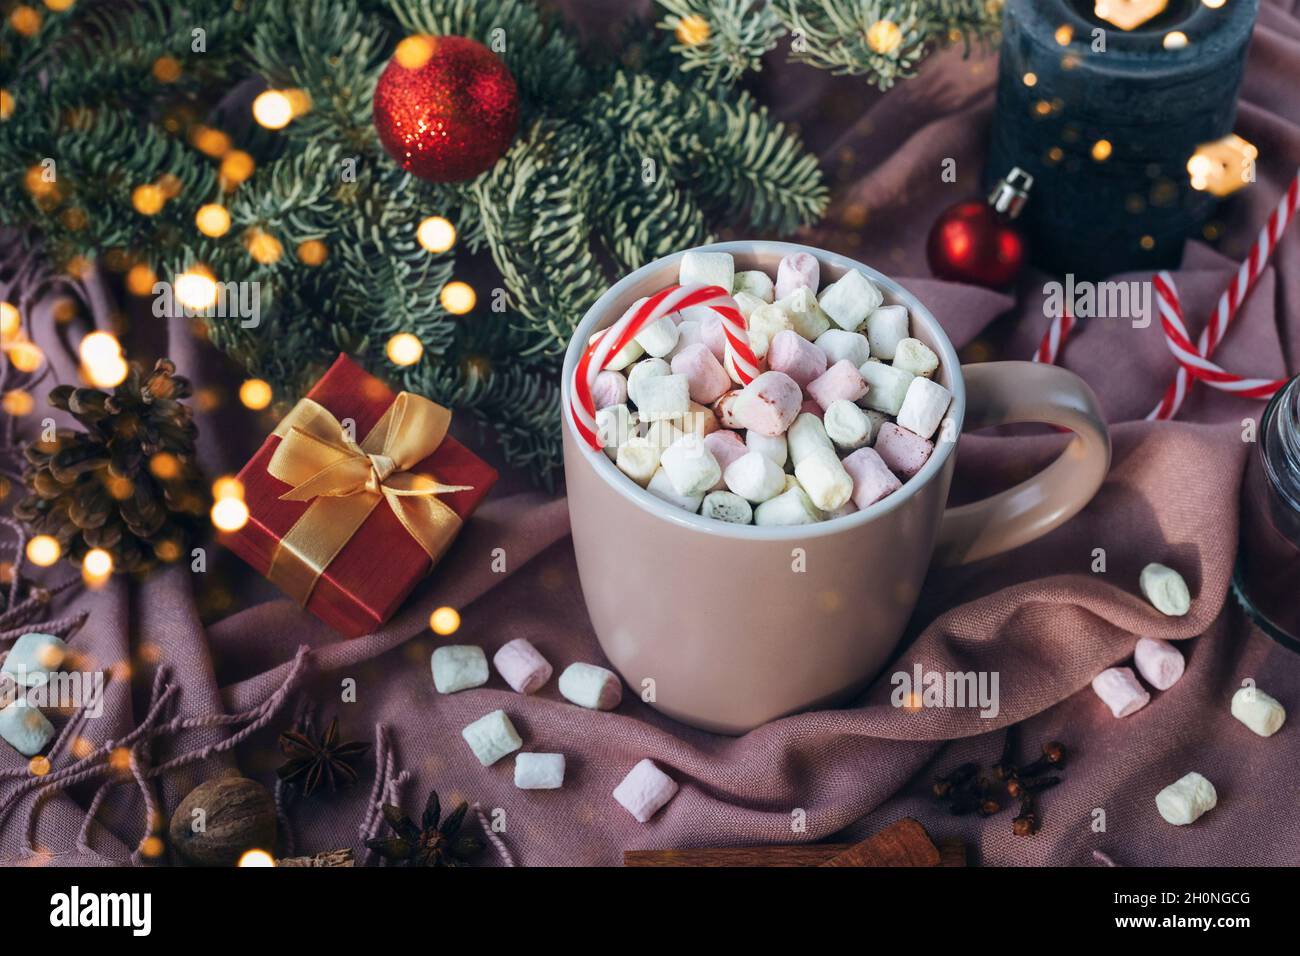 Tazza di cacao con marshmallow, rami di abete, luci di Natale e regalo in una scatola su sfondo tessile rosa. Natale, concetto di vacanze invernali. Vista dall'alto Foto Stock